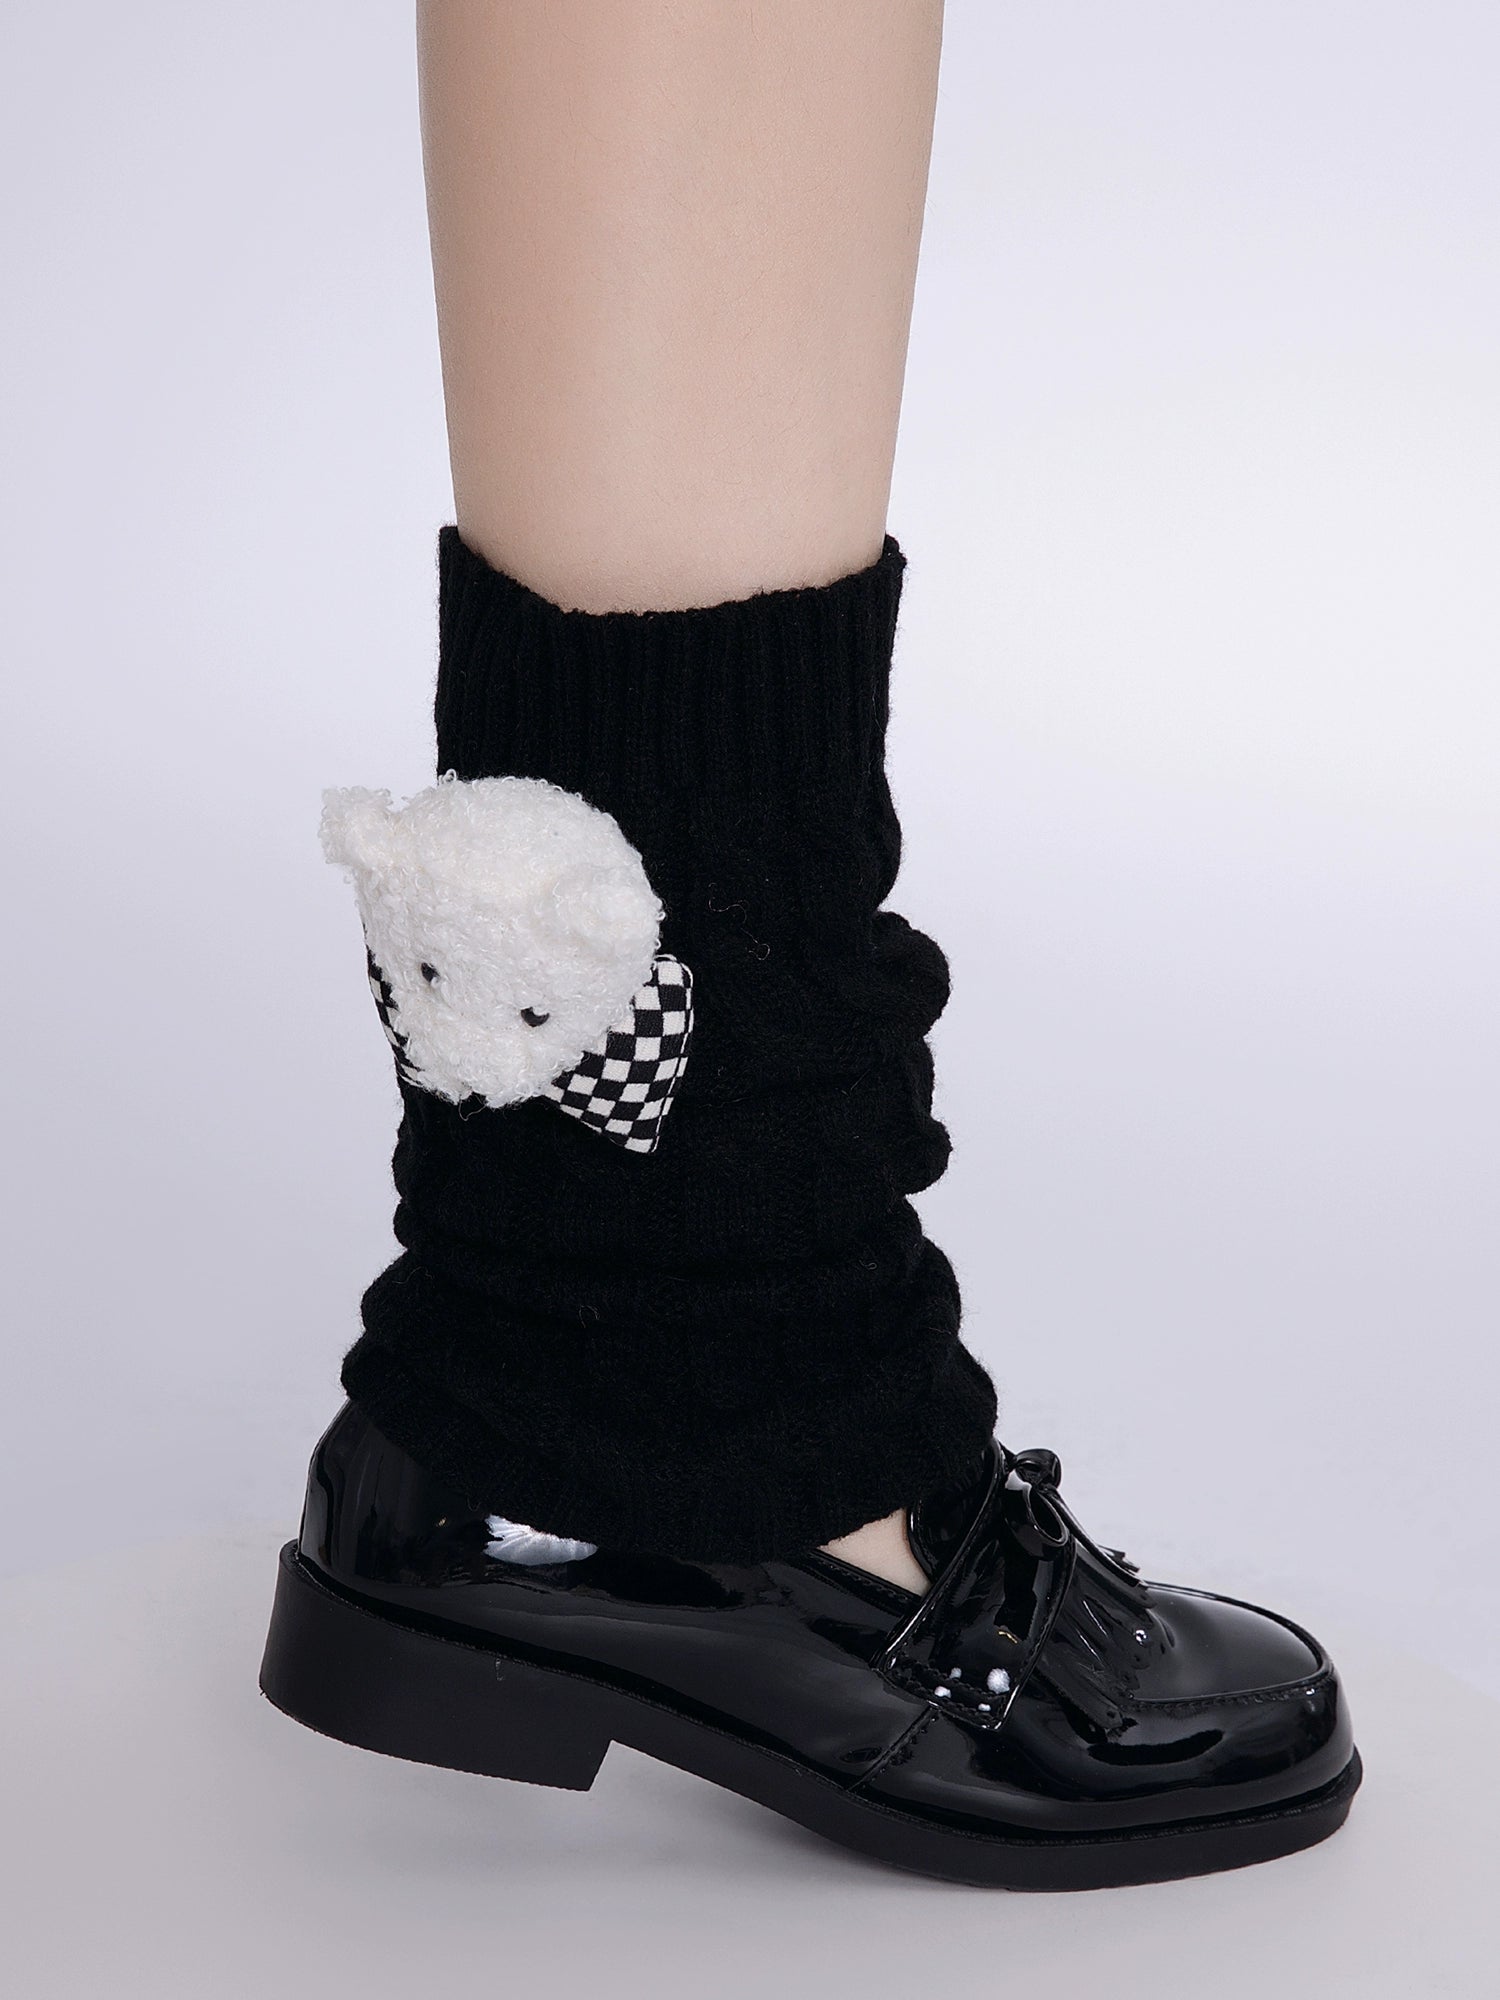 Tokyo Teddy JK Uniform Leg Warmers-ntbhshop